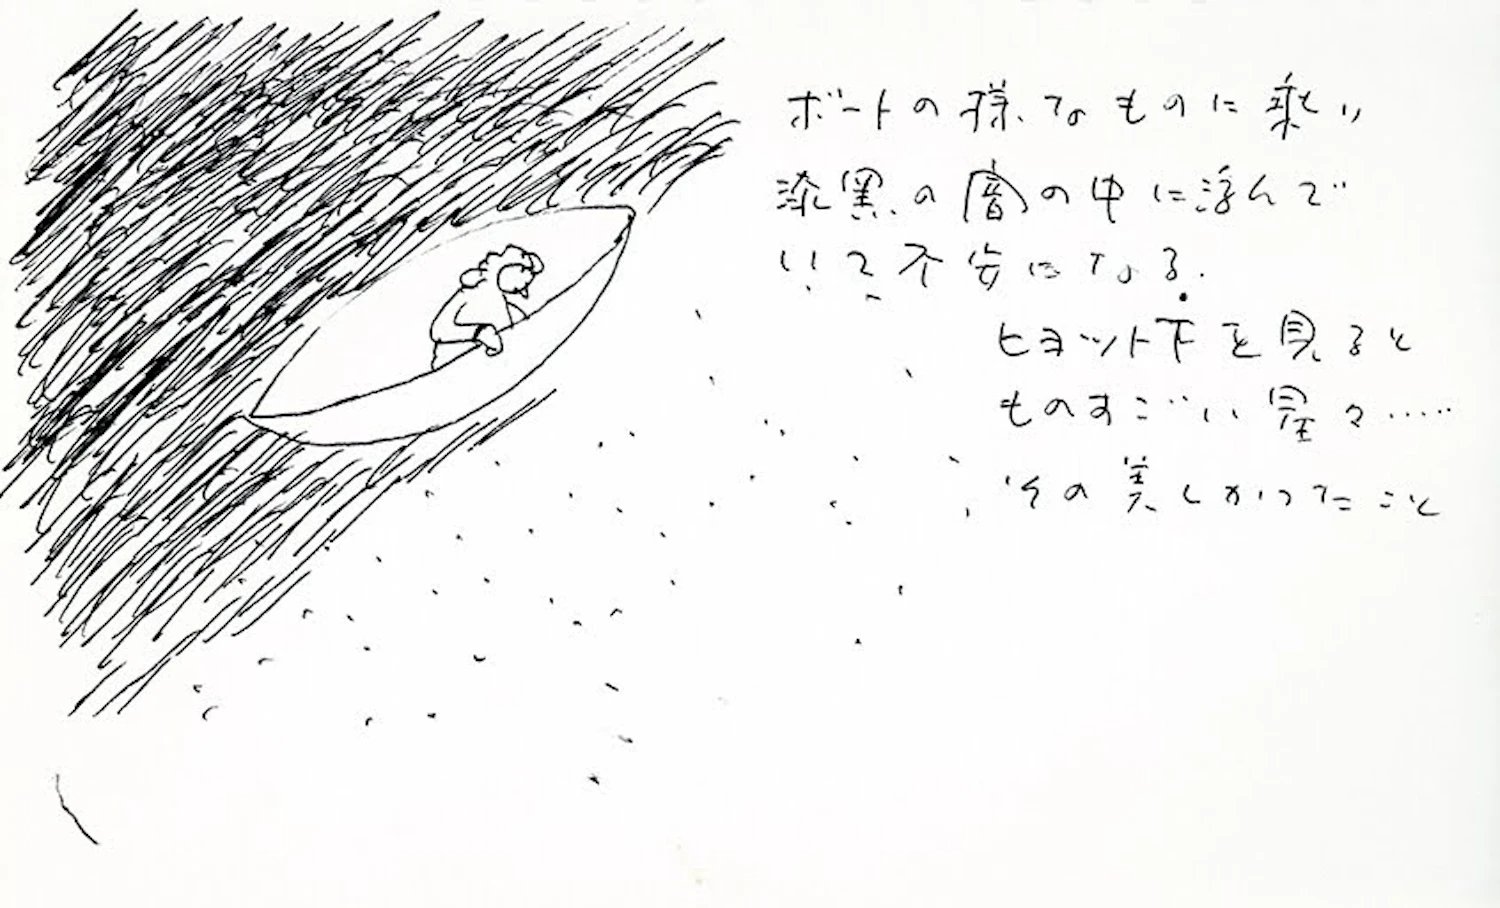 Sketchbook 「言葉 夢 記憶」 by Shiro Kuramata, 1980s, Kuramata Design Office Collection<br>© Kuramata Design Office